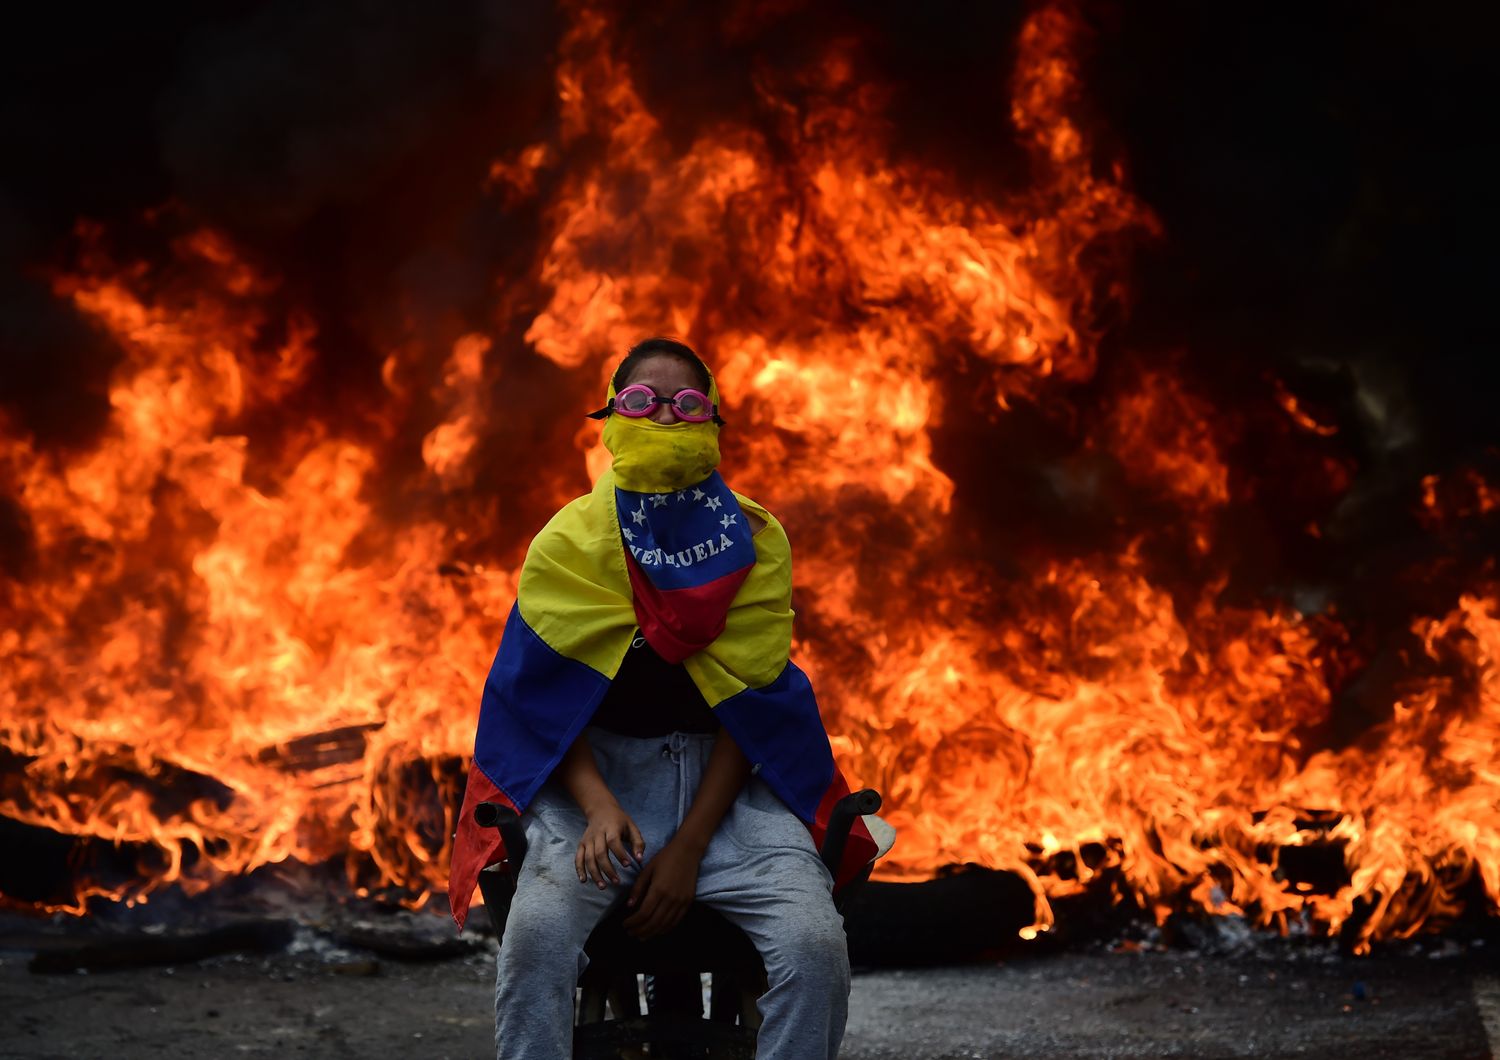 Il Vaticano potrebbe mediare per fermare le violenze in Venezuela